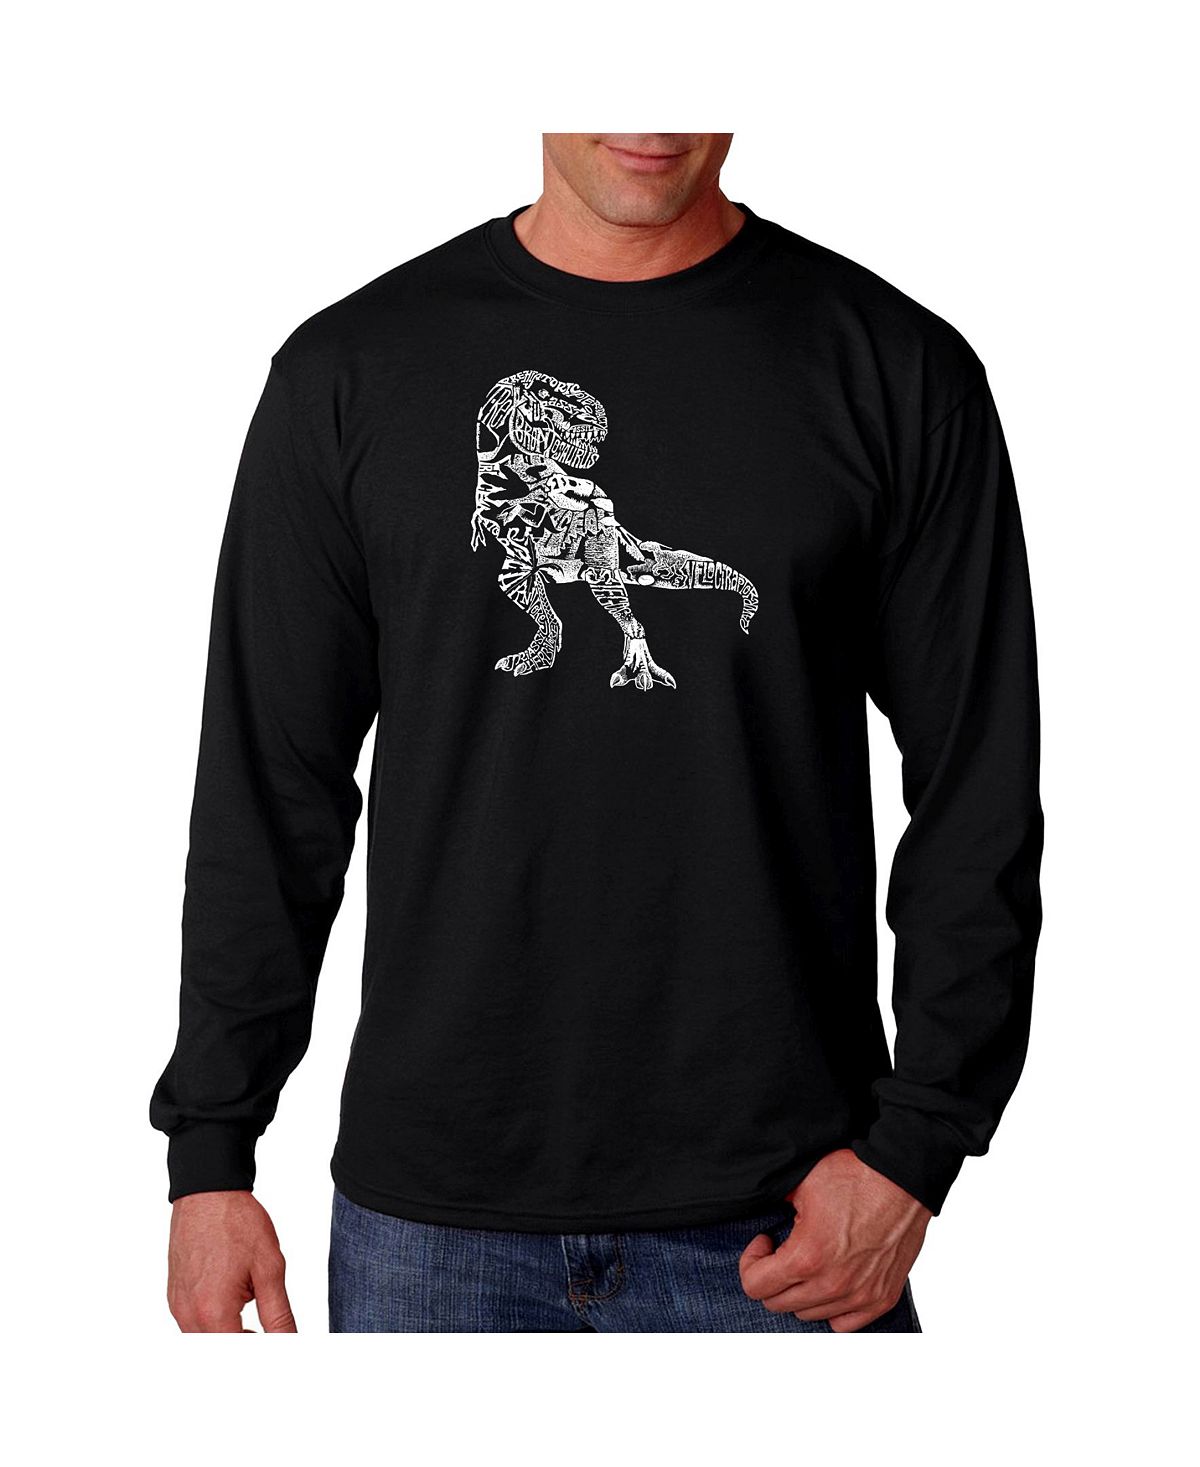 Мужская футболка с длинным рукавом word art - динозавр LA Pop Art, черный